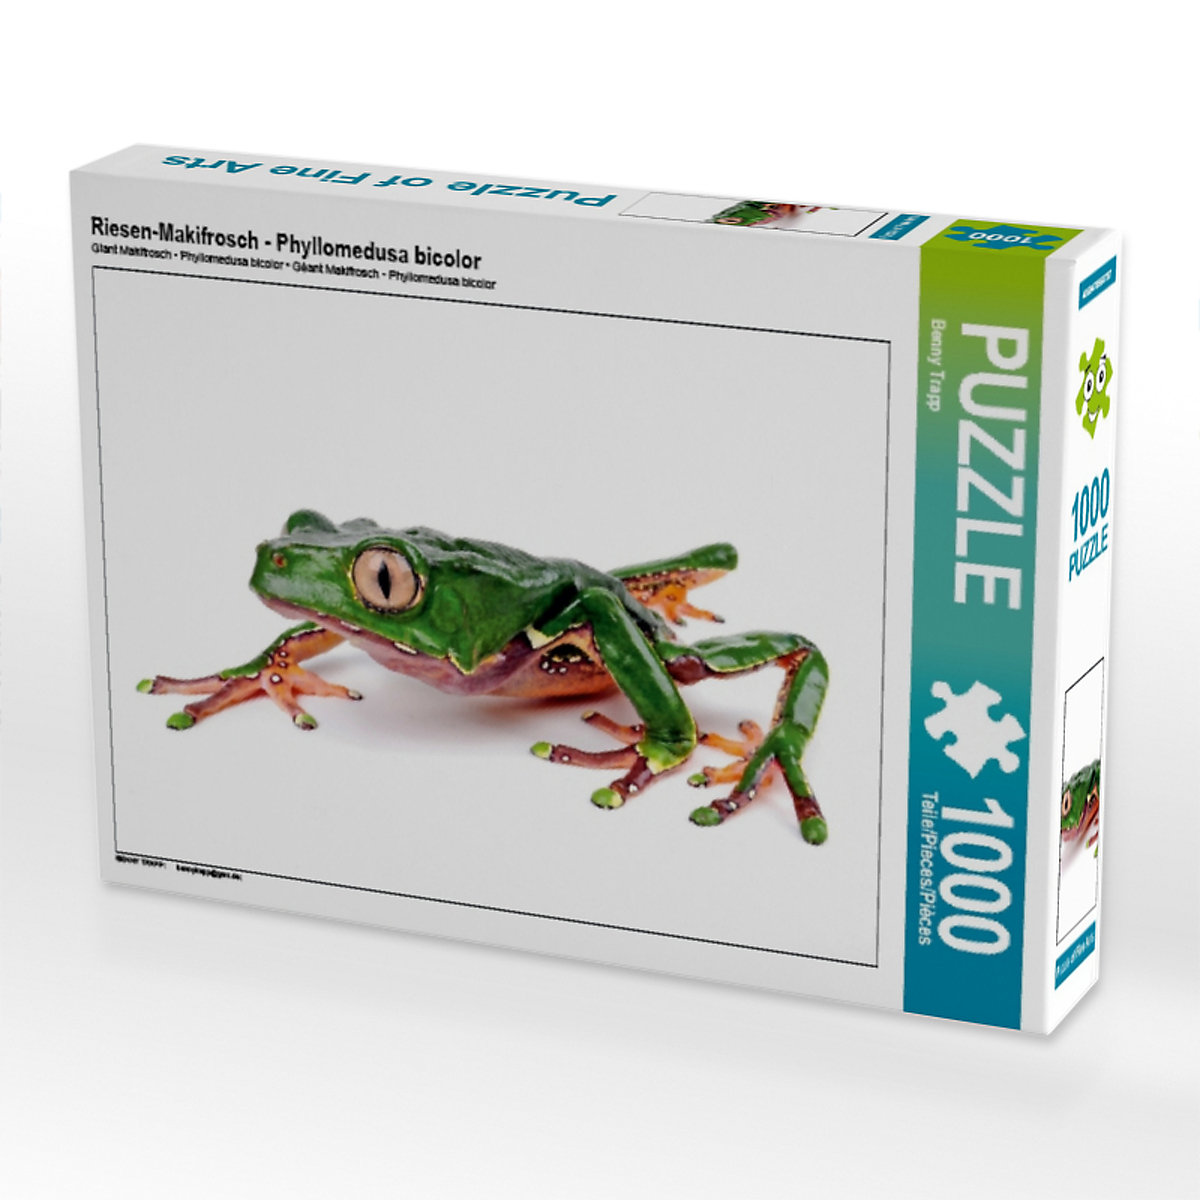 CALVENDO® Puzzle CALVENDO Puzzle Riesen-Makifrosch Phyllomedusa bicolor 1000 Teile Foto-Puzzle für glückliche Stunden